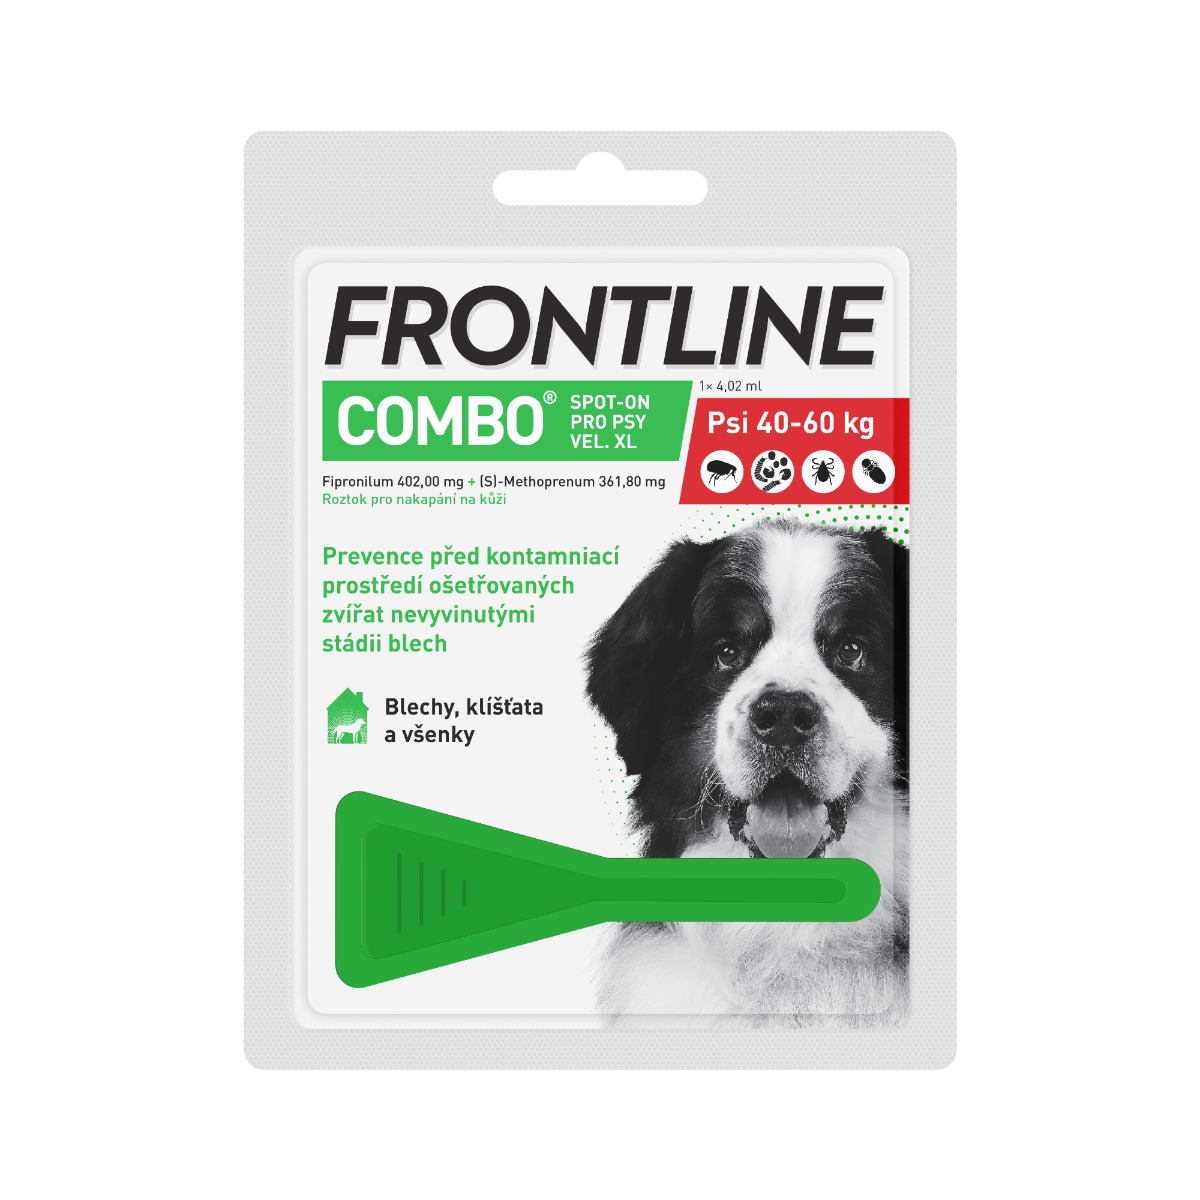 Frontline COMBO Spot on Dog XL 4.02 ml 1 pipeta Frontline